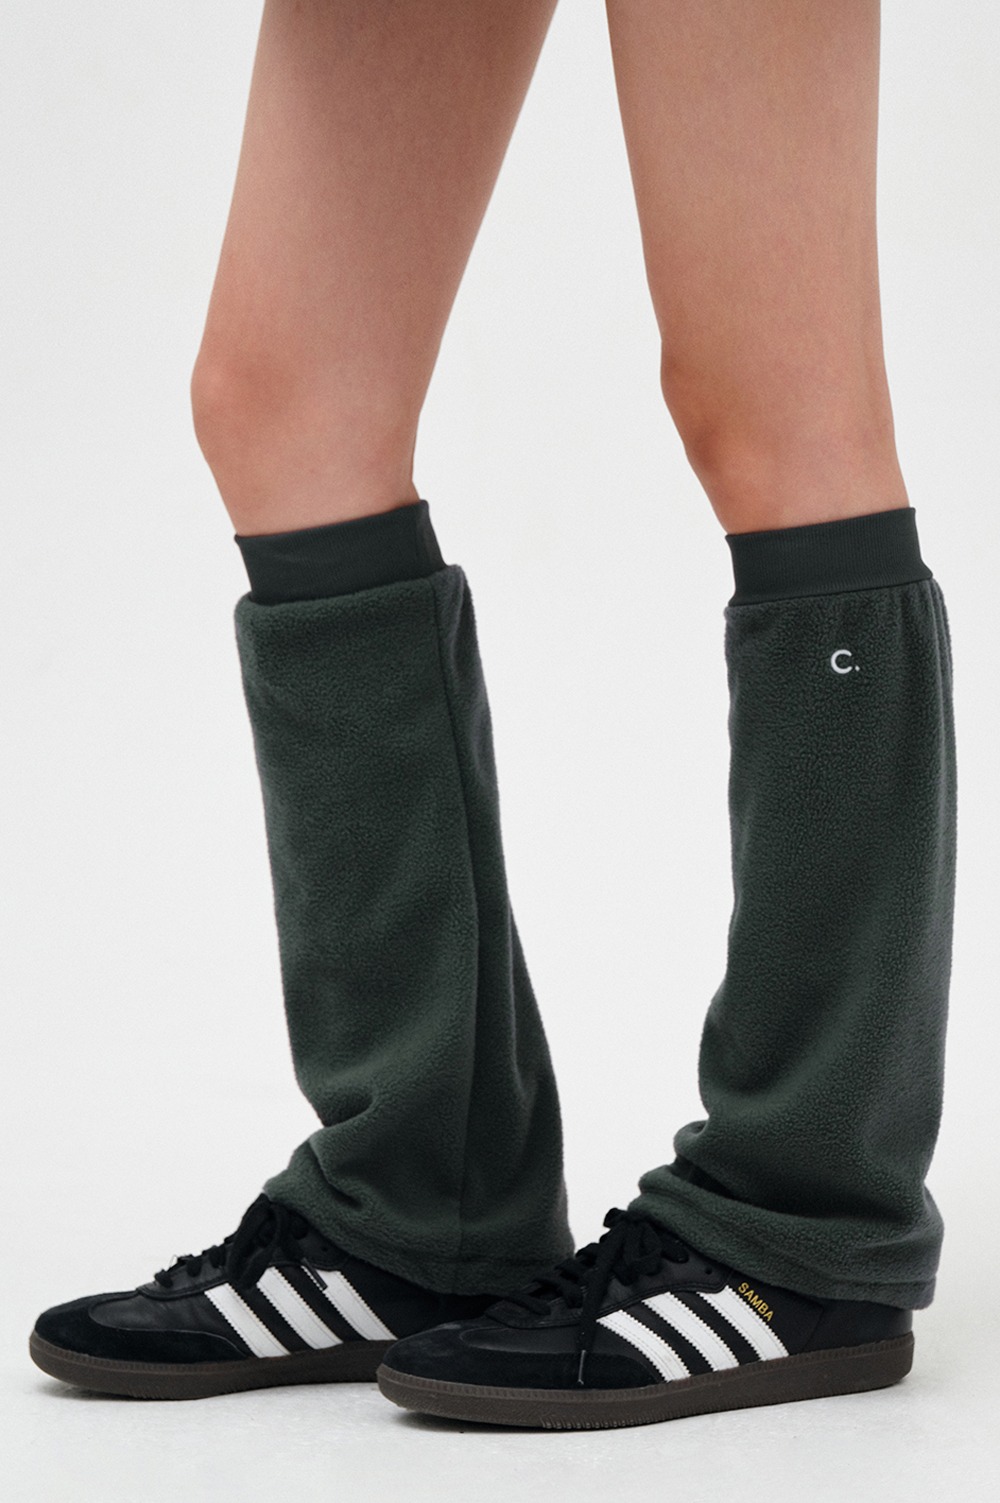 clove - [23FW clove] Fleece Leg Warmer (Charcoal)